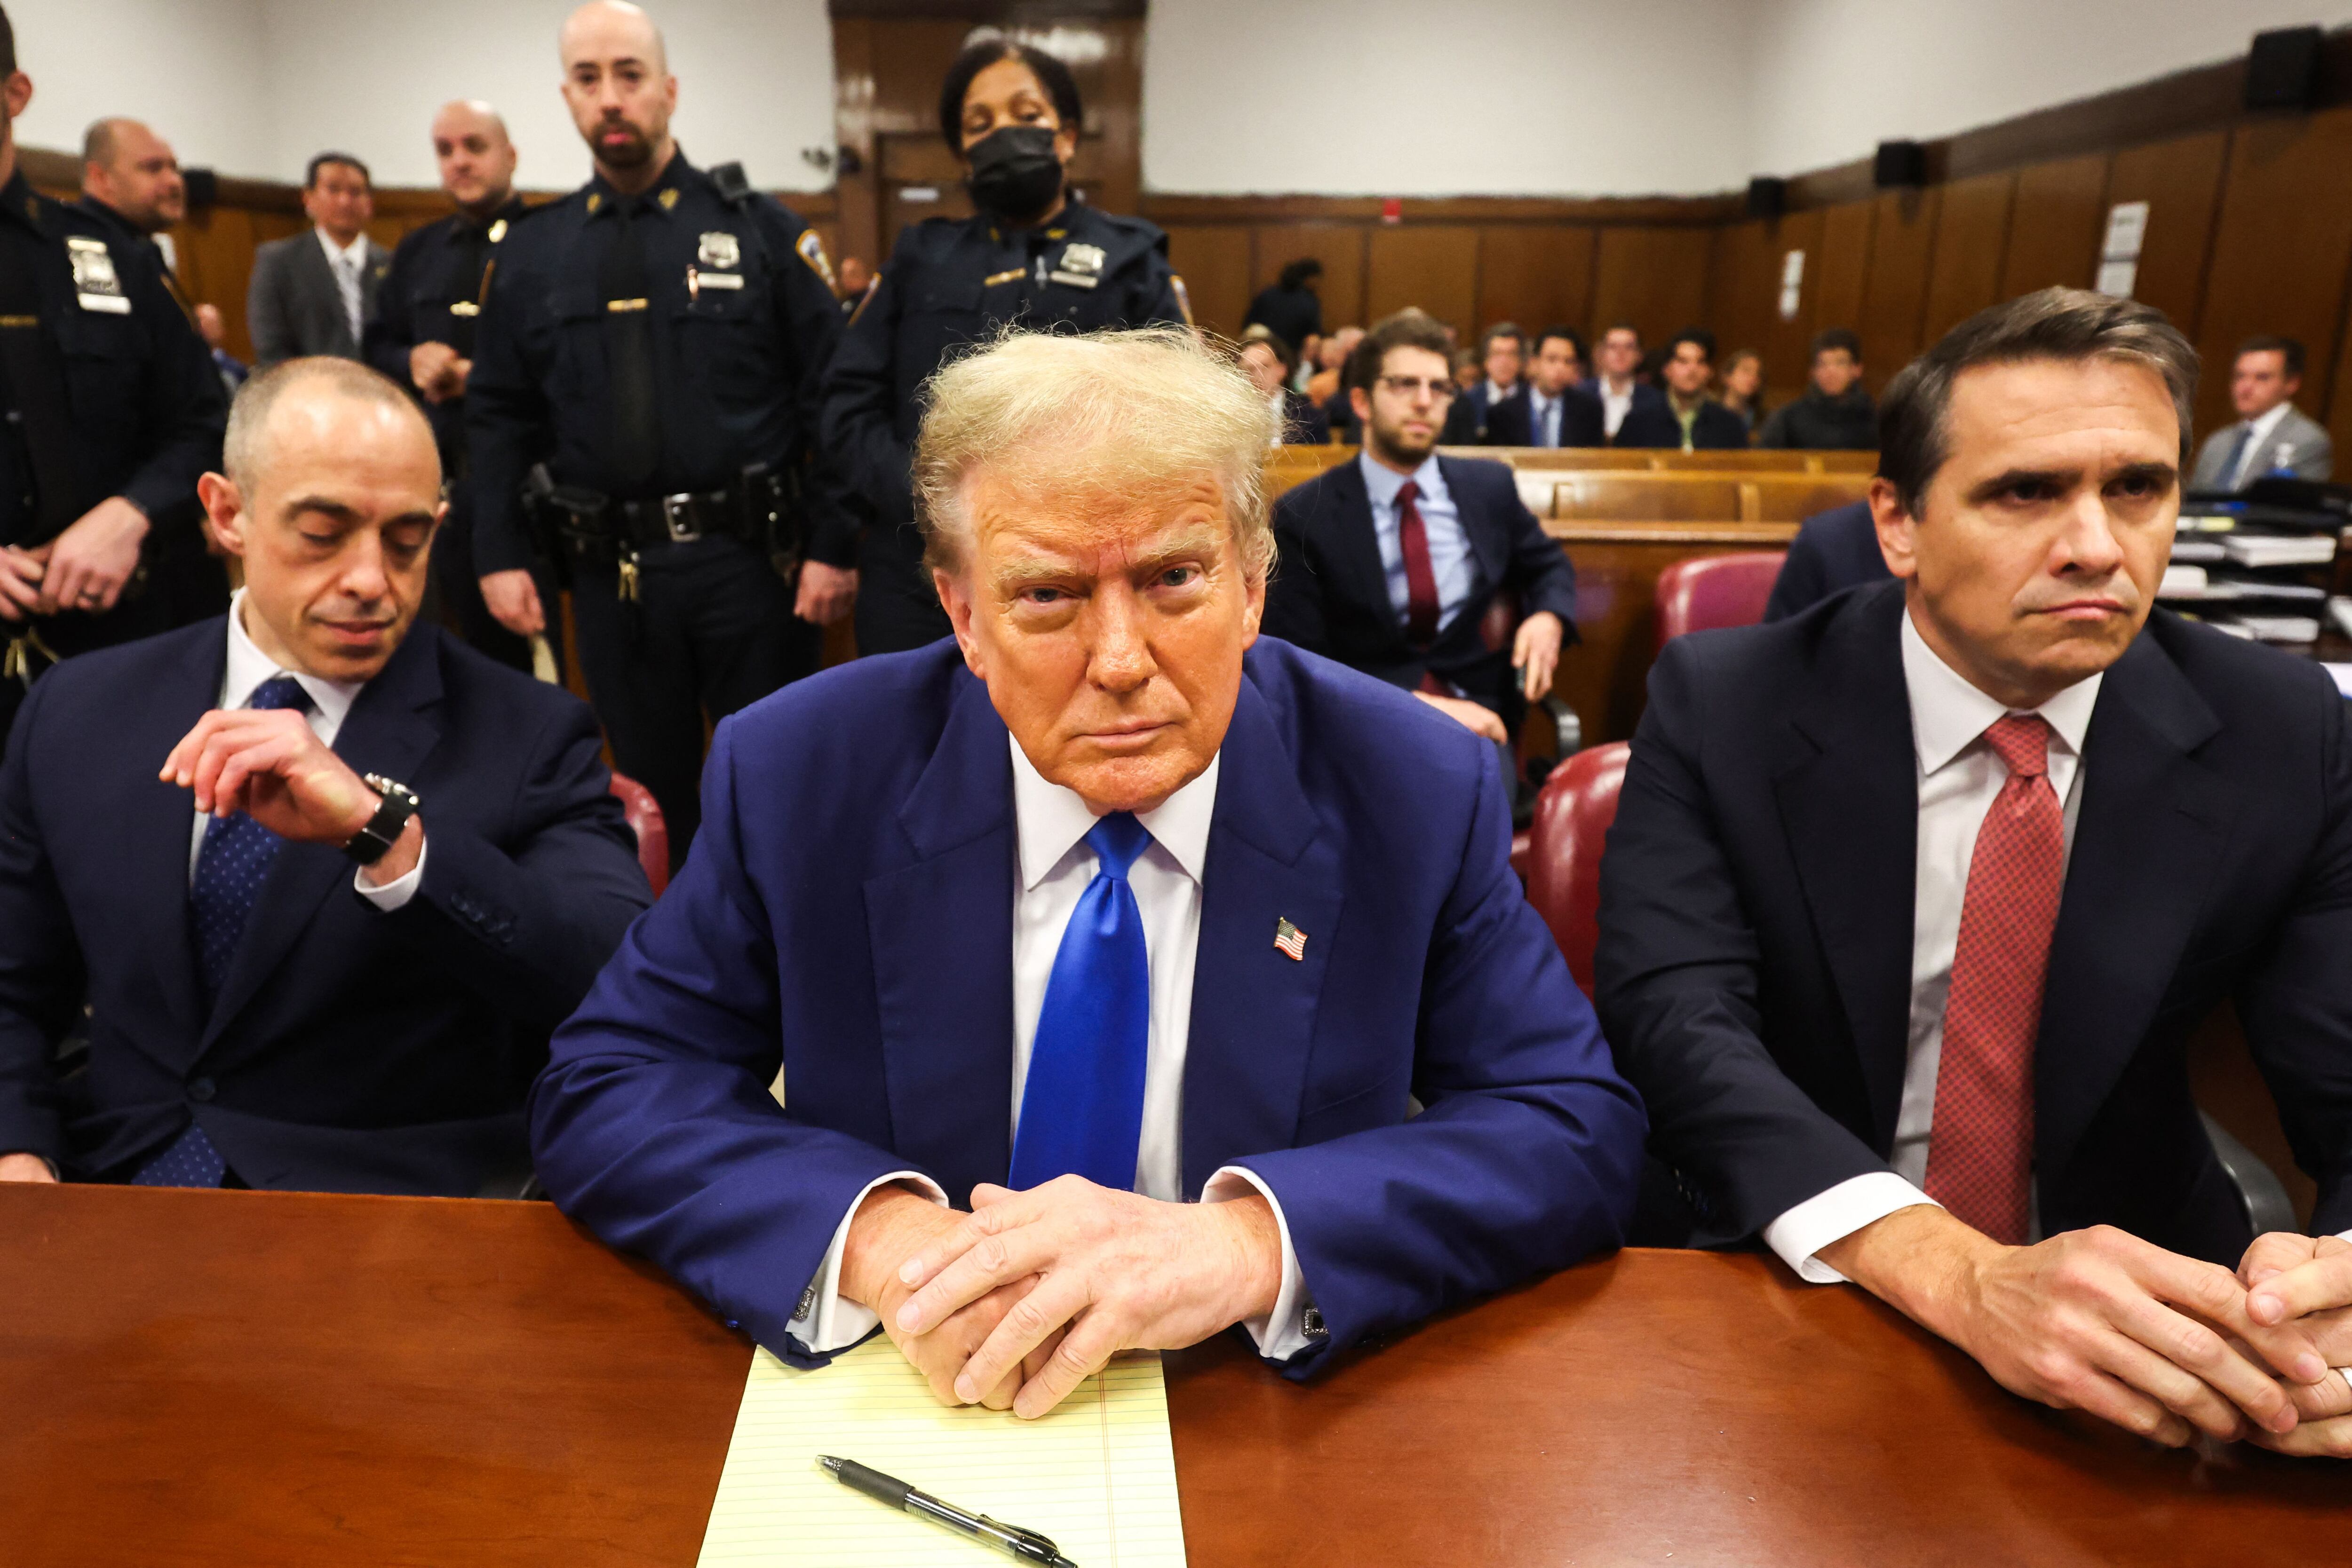 Donald Trump, sentado junto a los abogados Emil Bove (izq.) y Todd Blanche, asiste a su juicio por supuestamente encubrir pagos de silencio a Stormy Daniels. (Foto de Charly TRIBALLEAU / AFP).